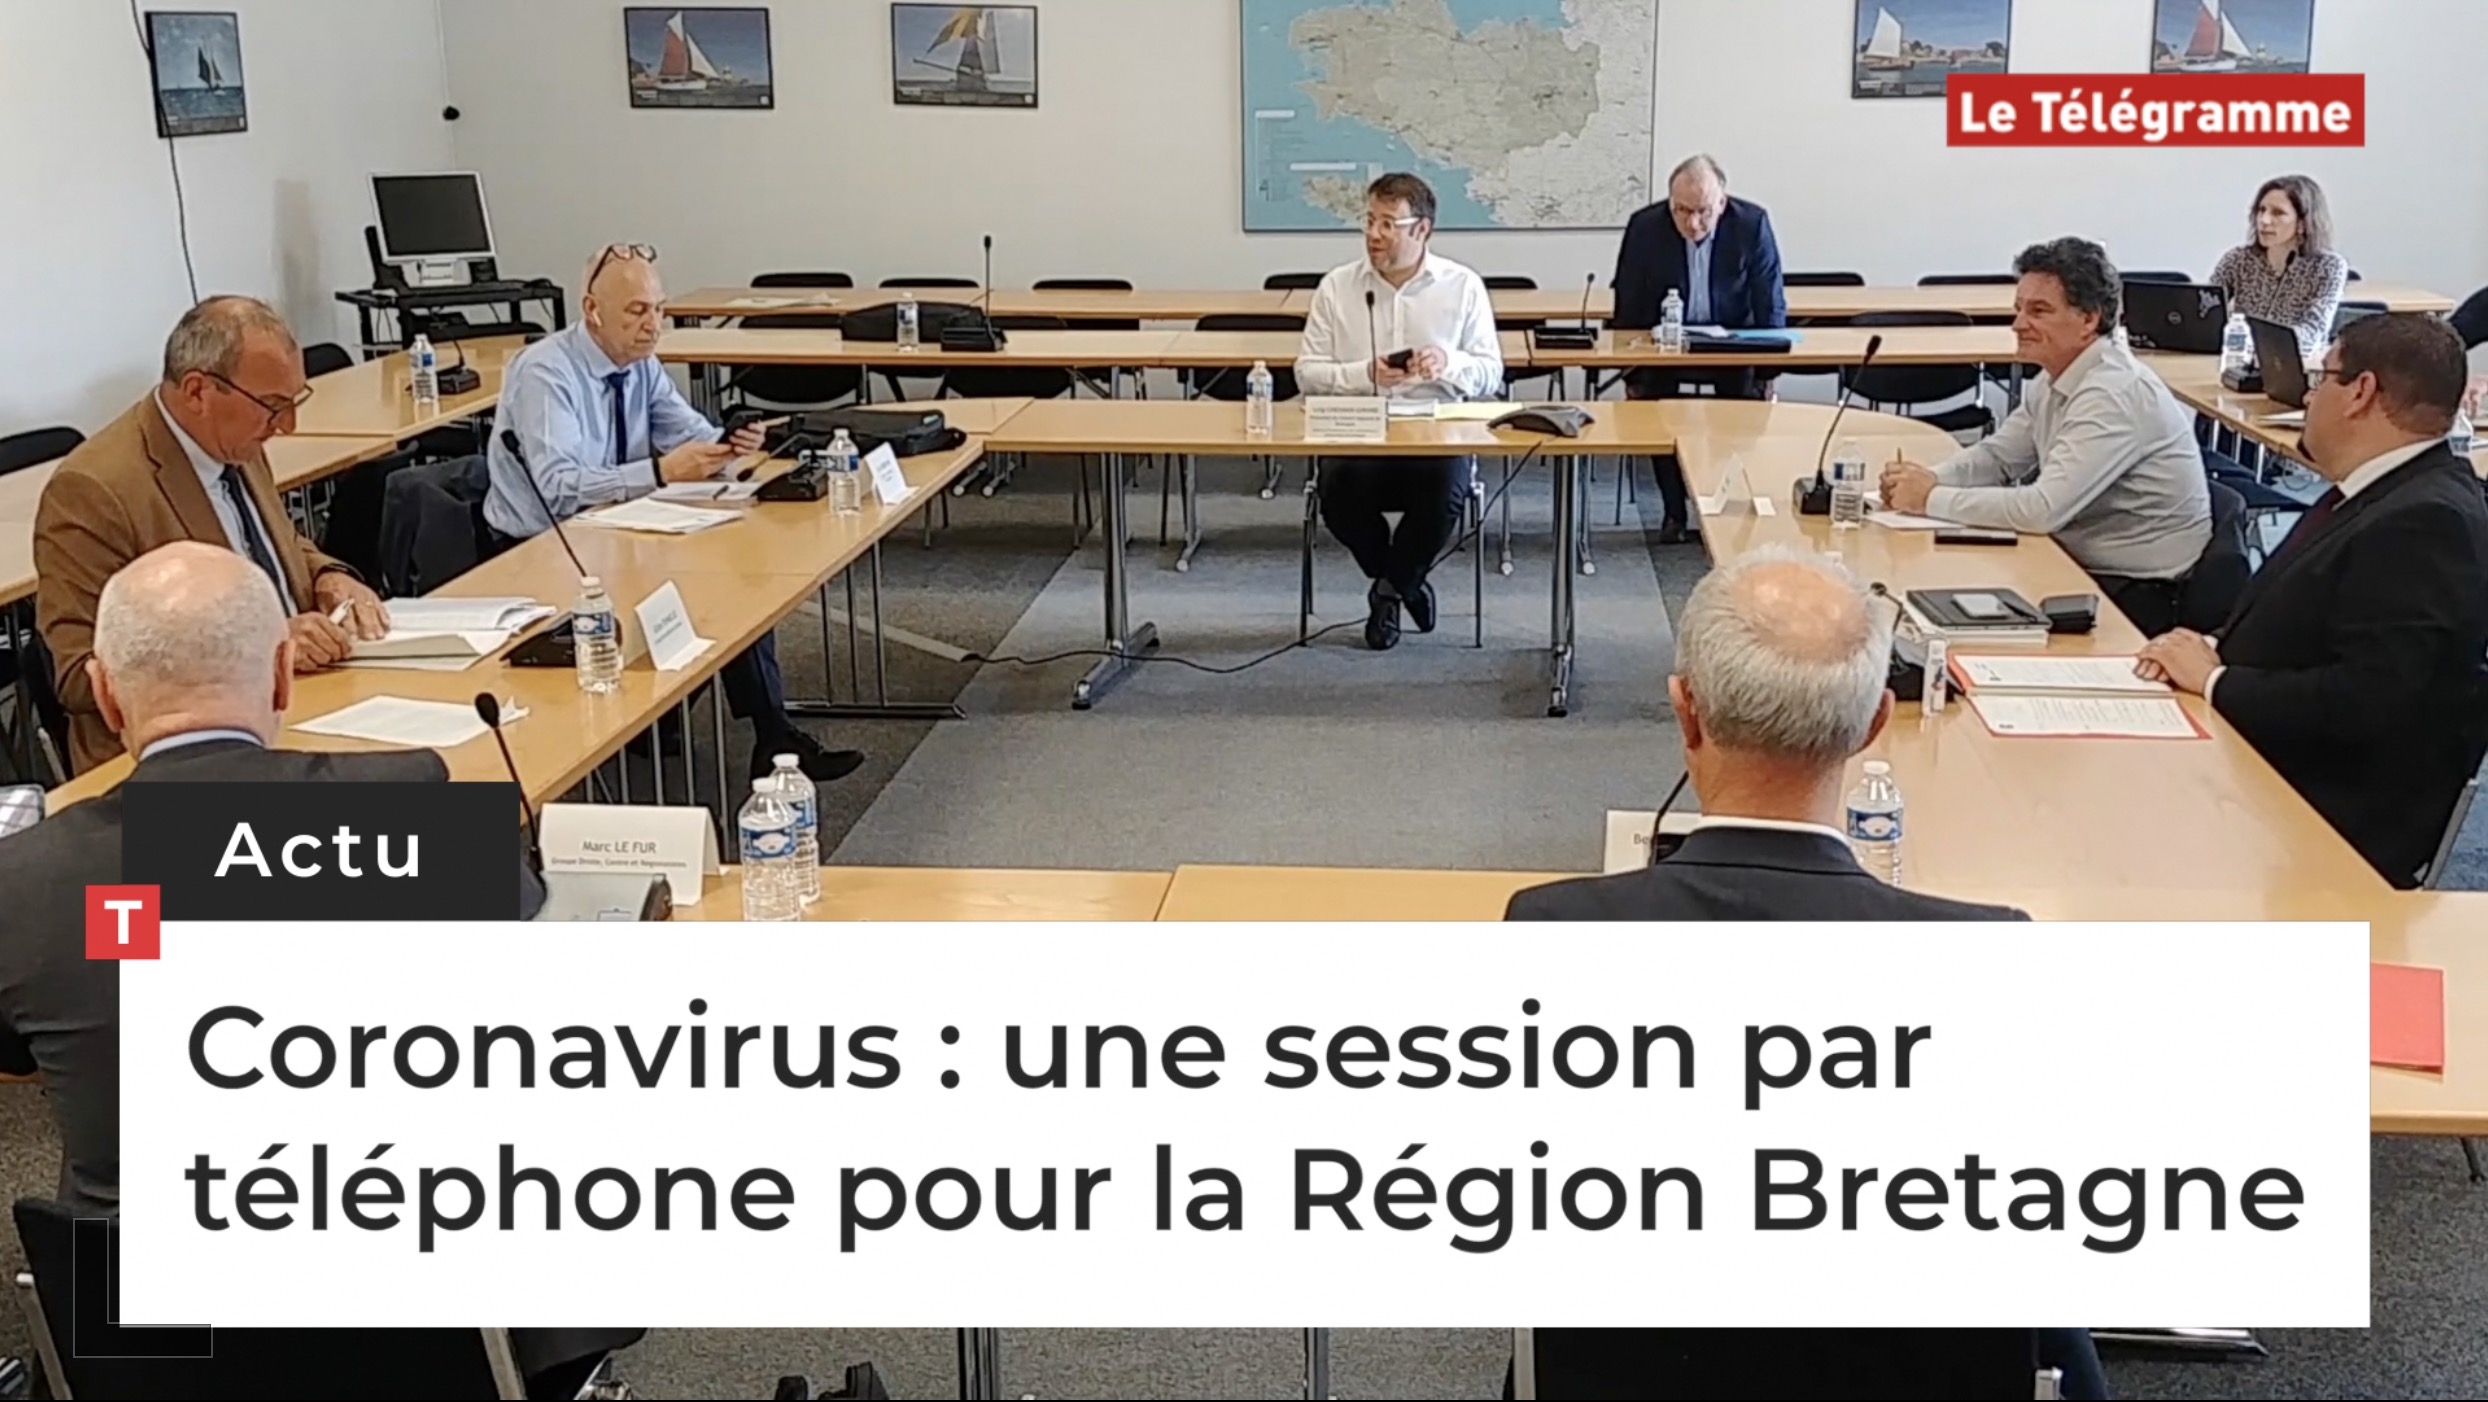 Coronavirus : une session par téléphone pour la Région Bretagne (Le Télégramme)